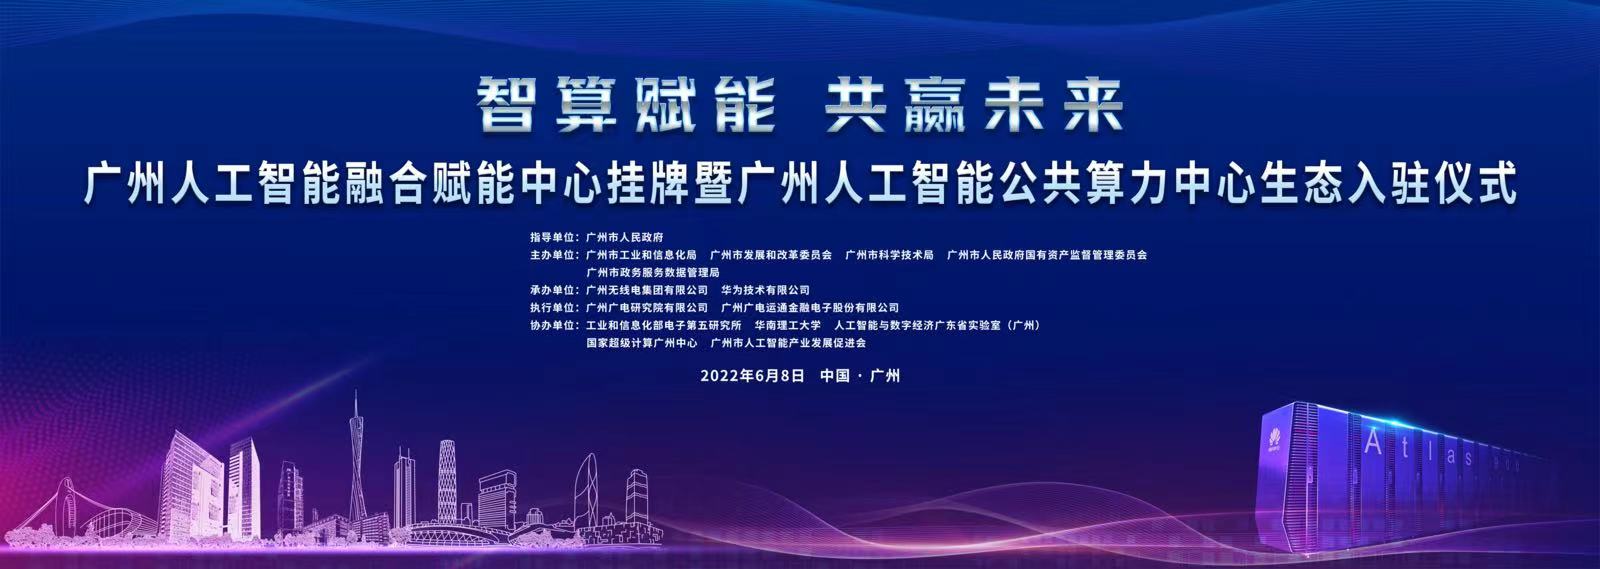 广州人工智能融合赋能中心挂牌暨广州人工智能公共算力中心生态入驻仪式